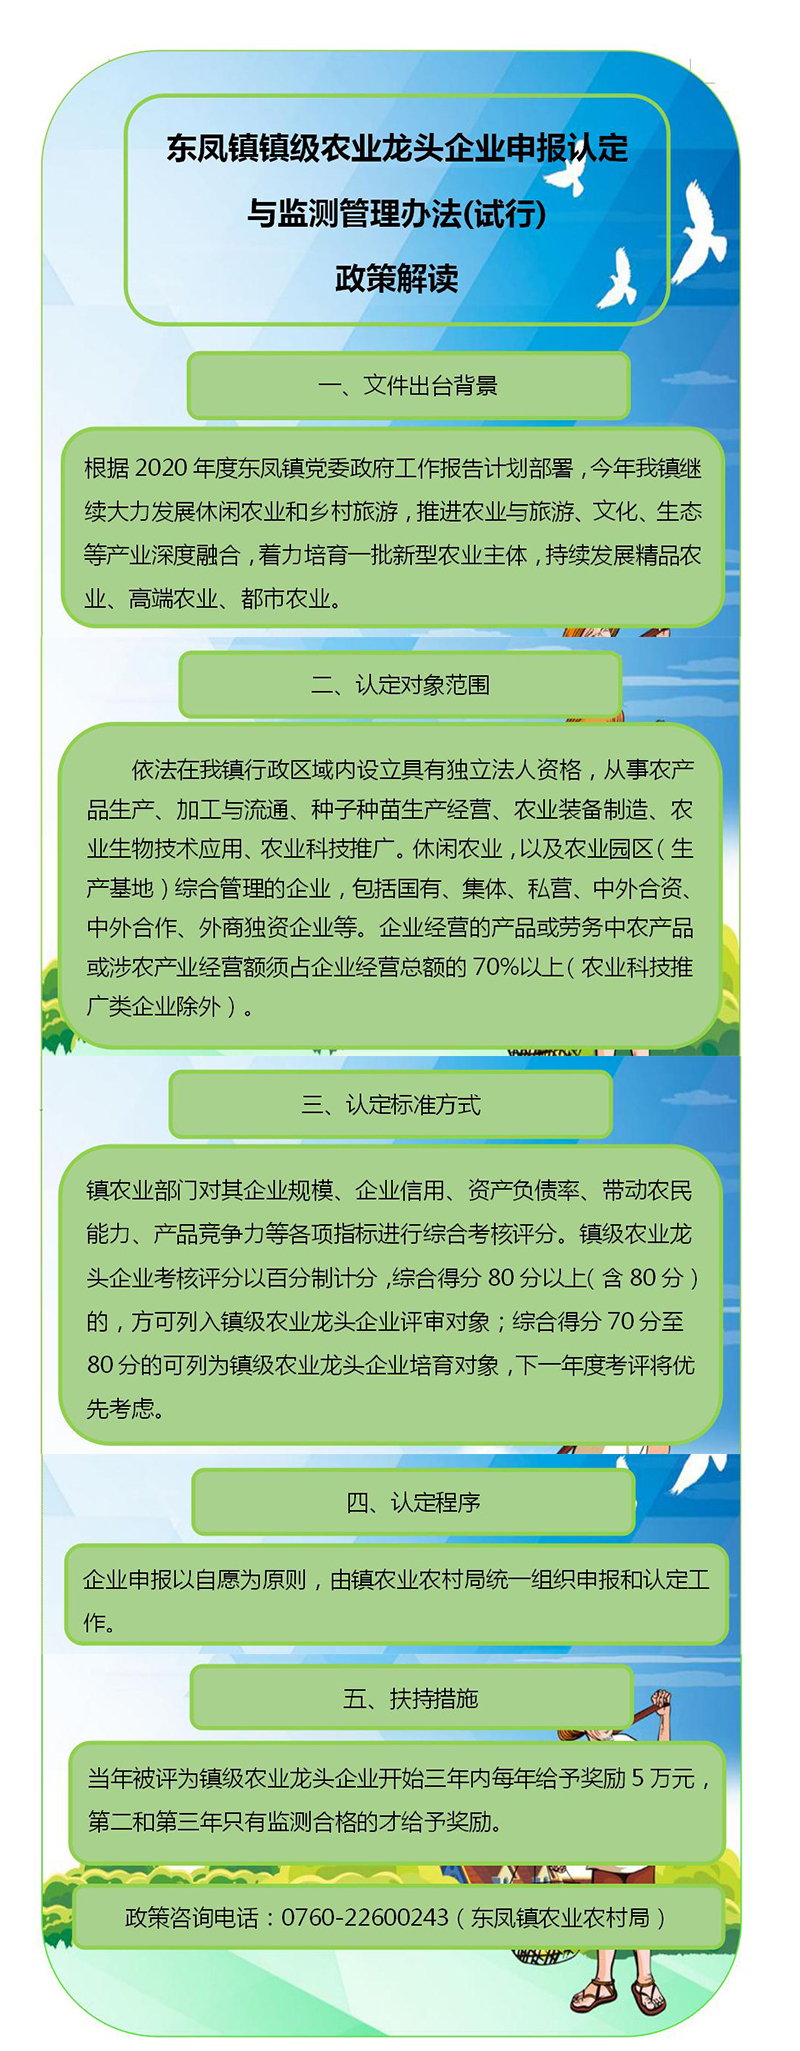 东凤镇镇级农业龙头企业申报认定与监测管理办法（试行）政策解读.jpg